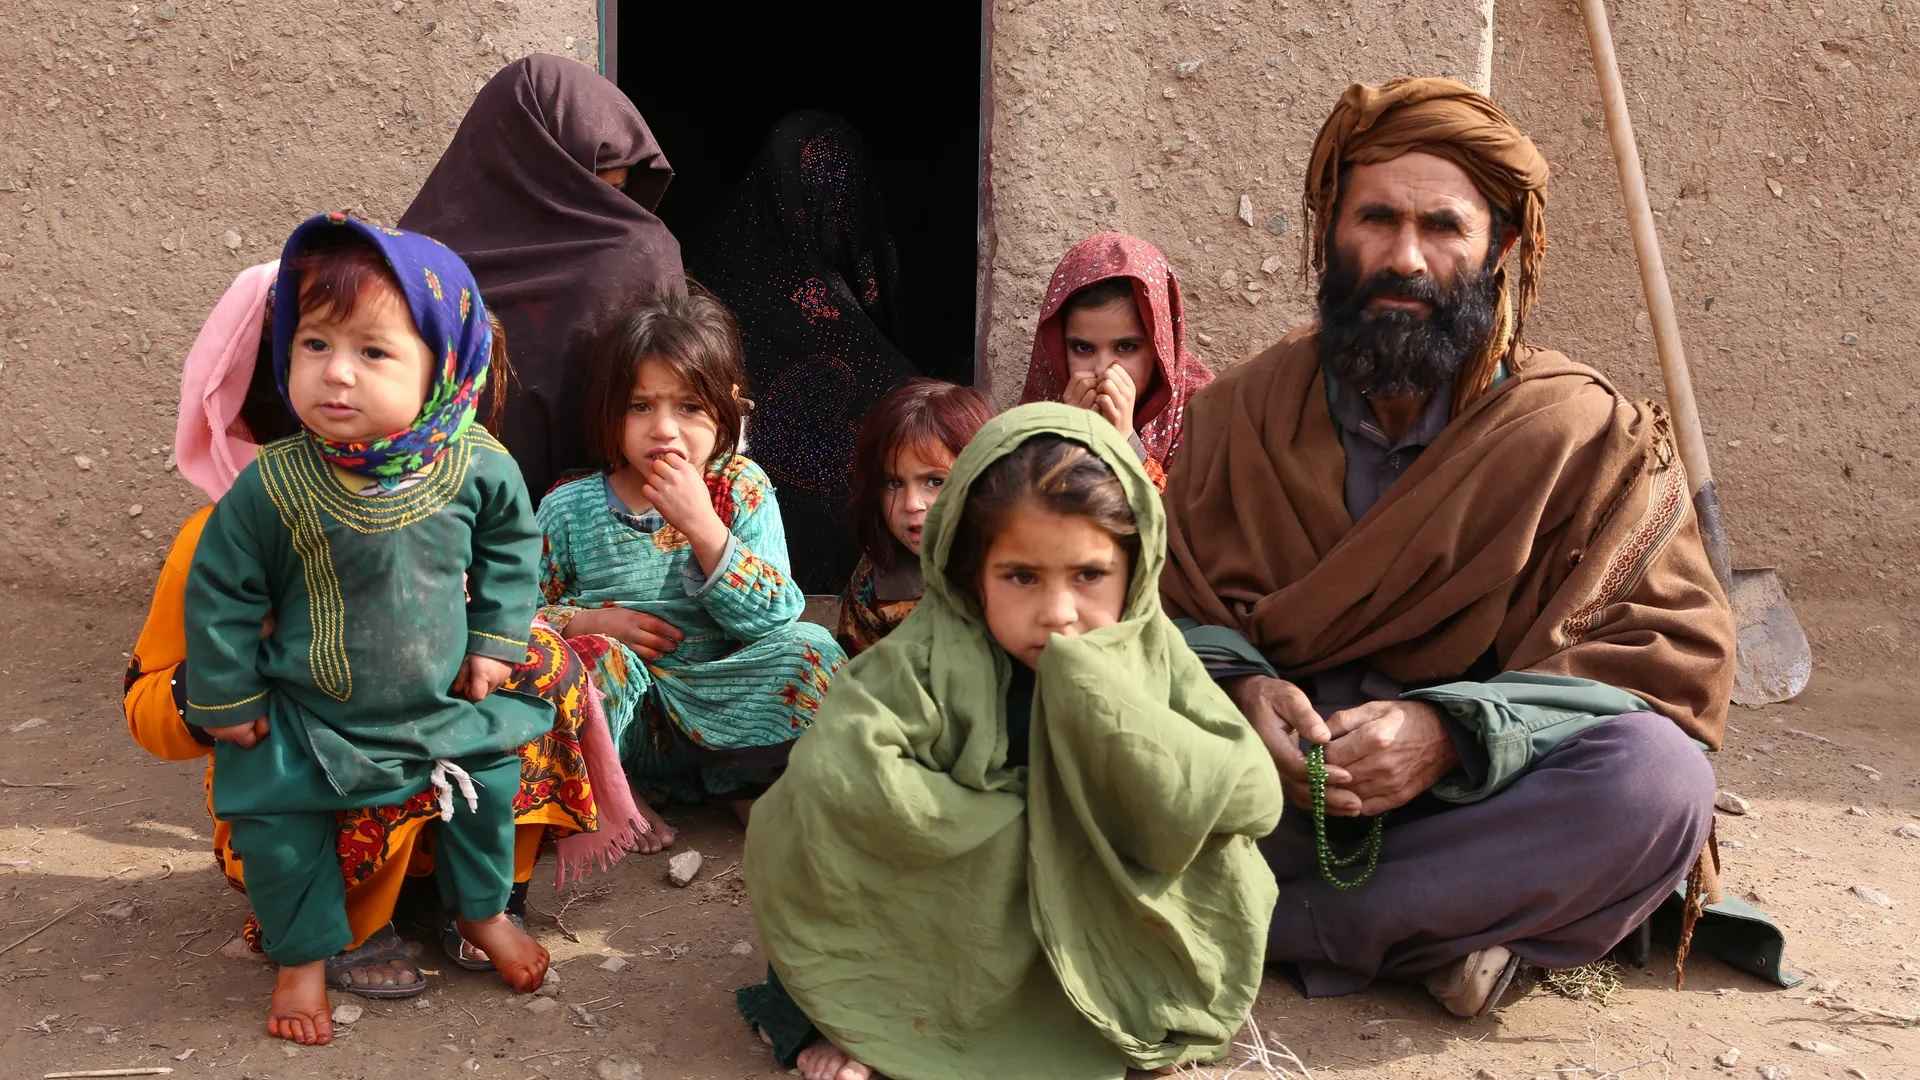 আফগানিস্তানে ইসলামি বিচারব্যবস্থা কার্যকর করা হবে: তালেবান প্রধান